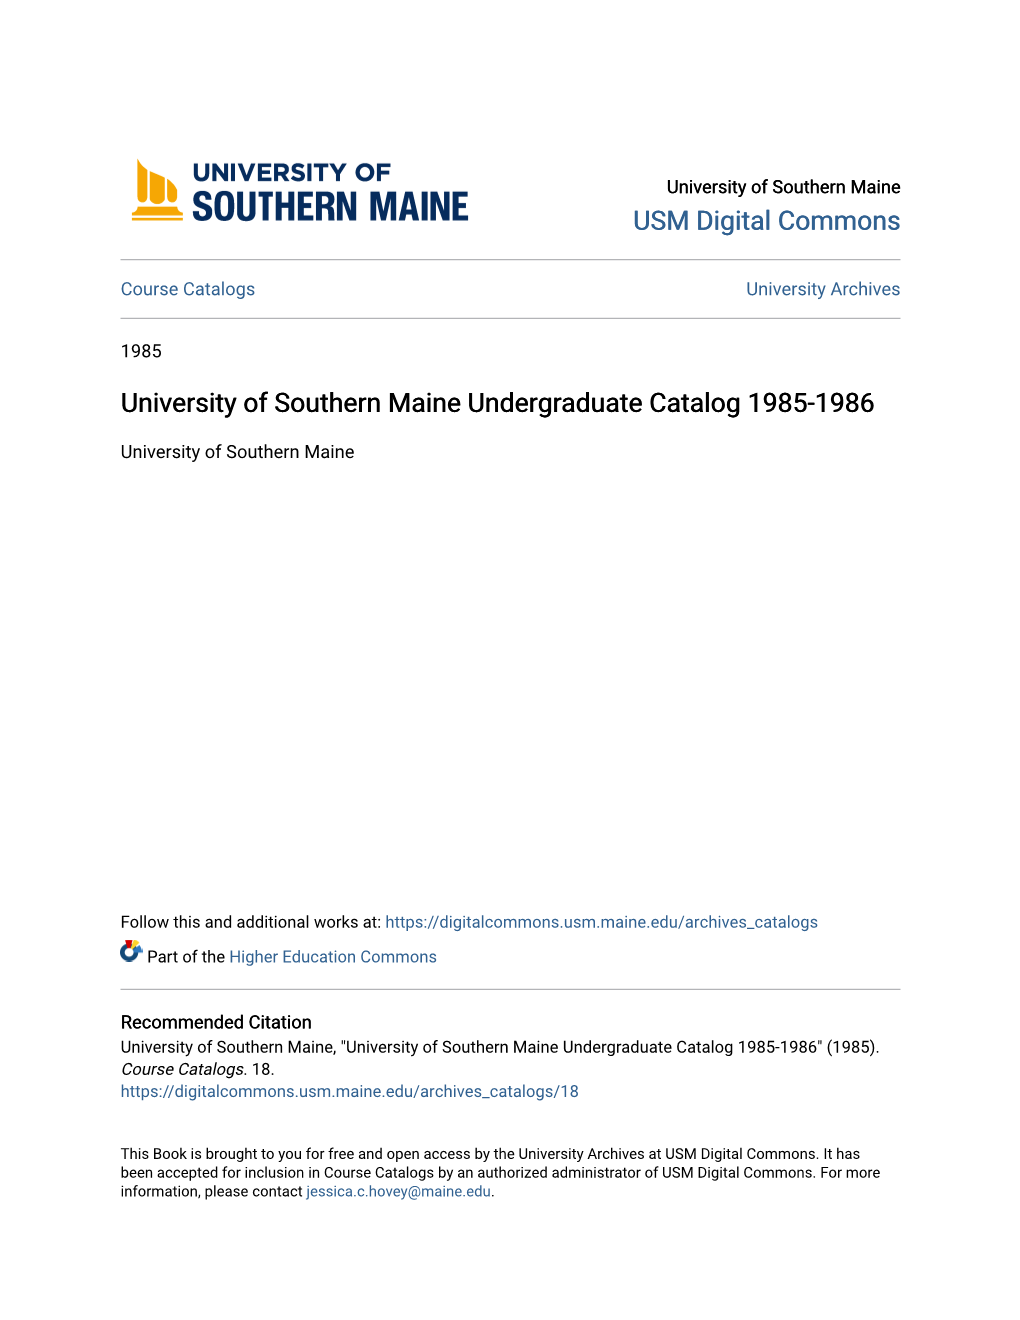 University of Southern Maine Undergraduate Catalog 1985-1986